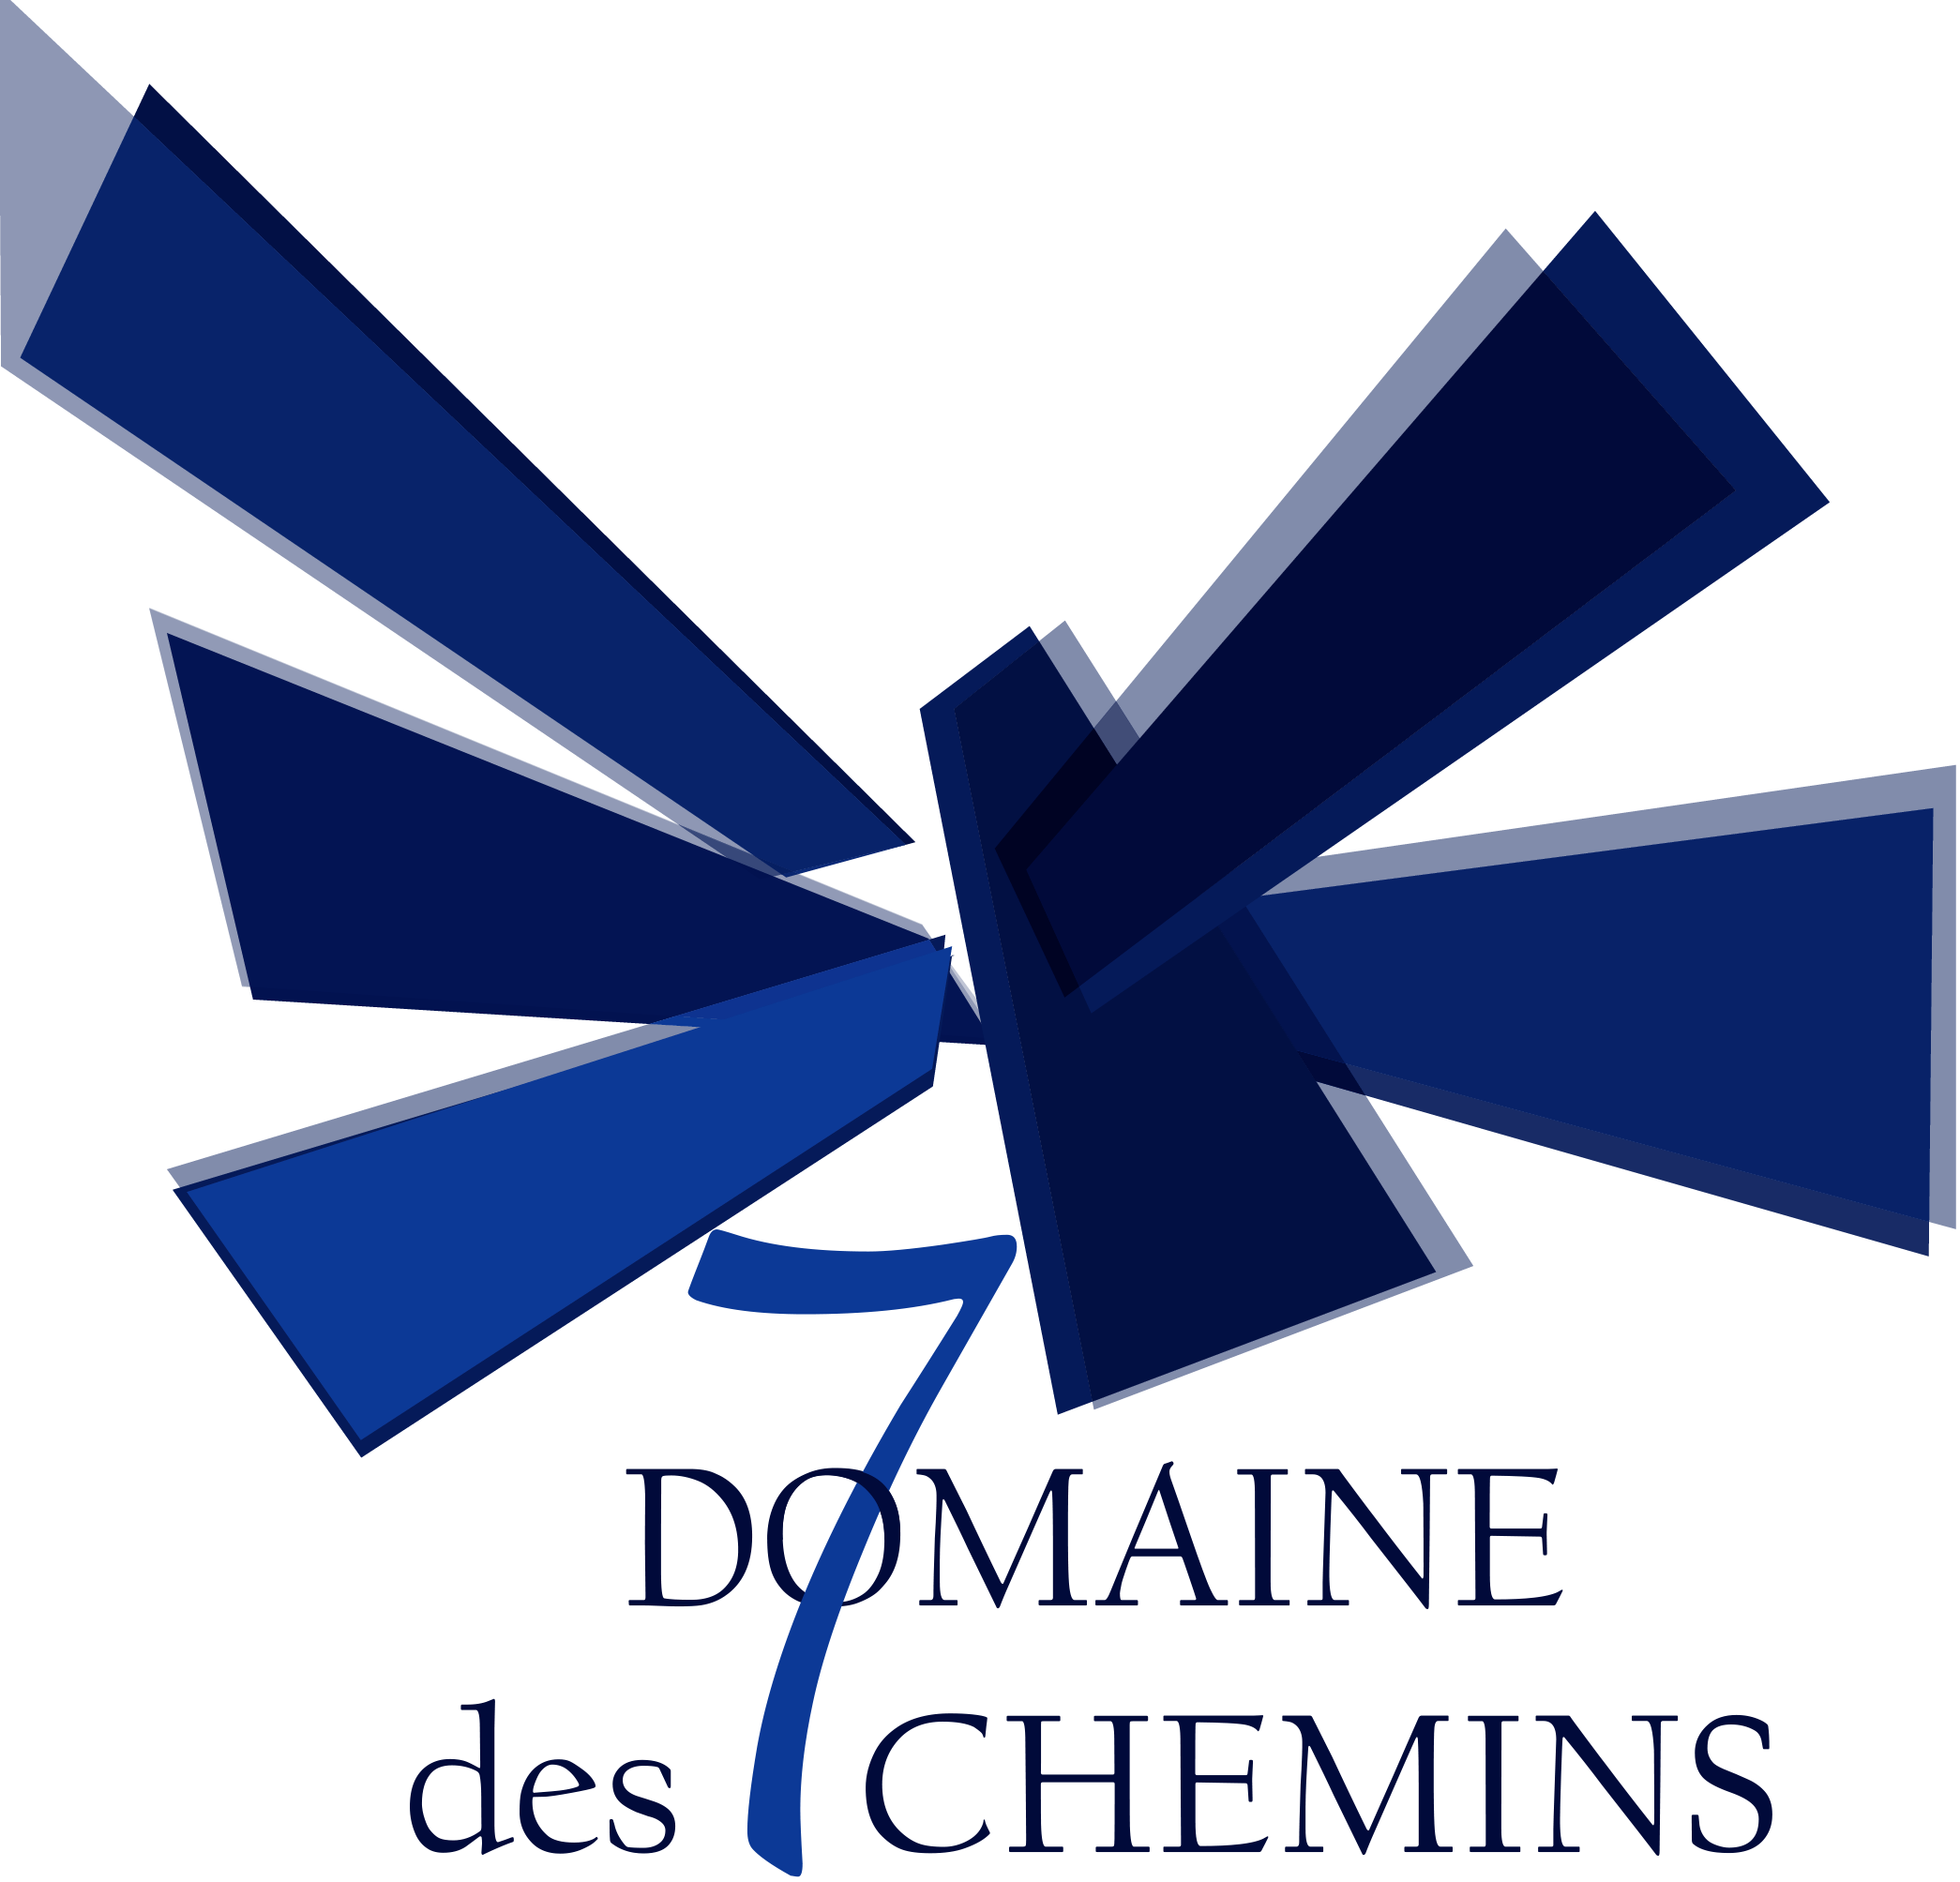 DOMAINE DES 7 CHEMINS